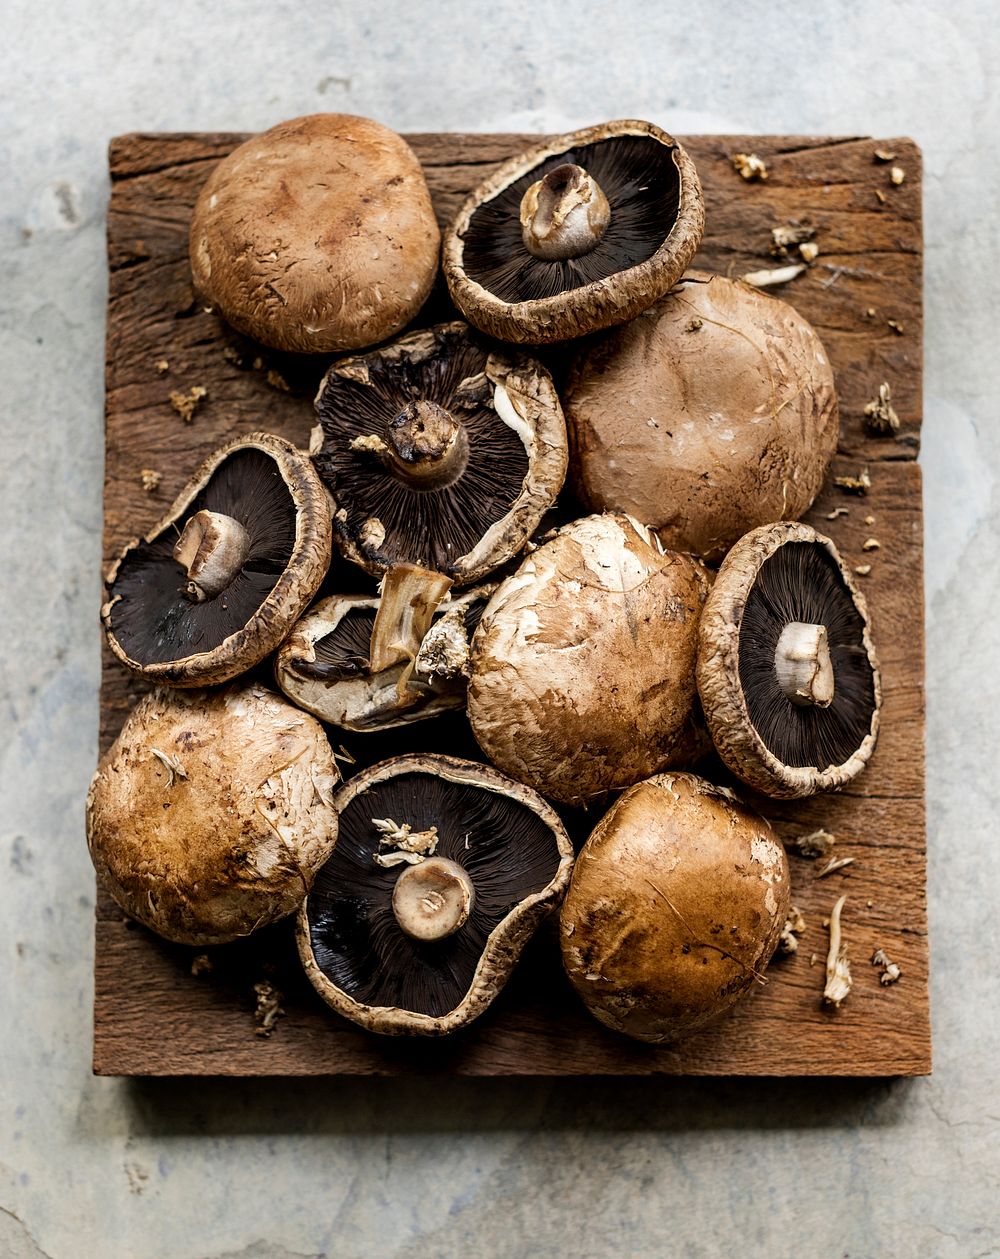 Portobello mushrooms on the wooden board